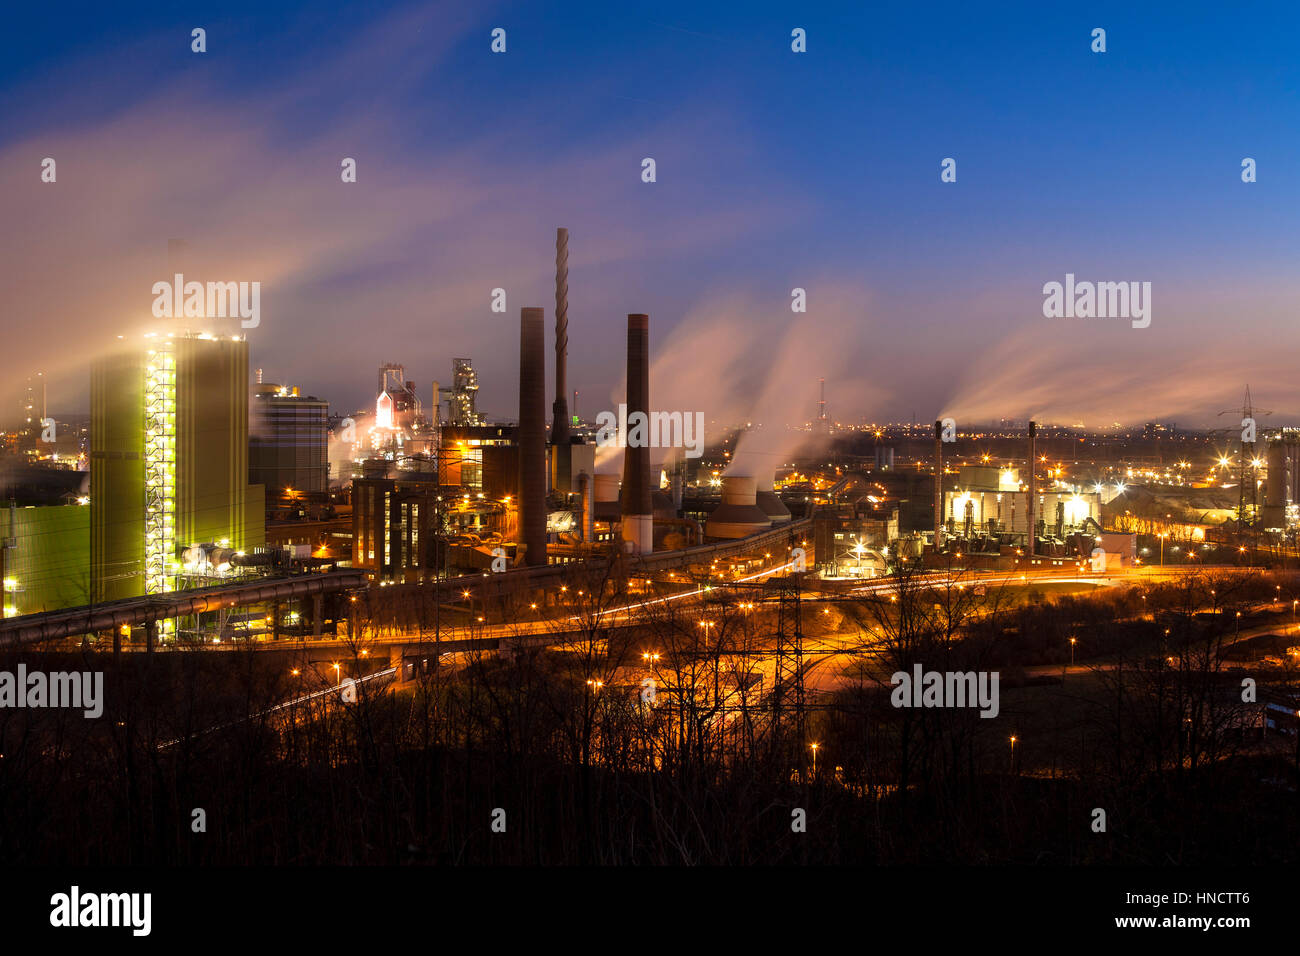 Deutschland, Nordrhein-Westfalen, Ruhr Gebiet, Duisburg, ThyssenKrupp Steel Plant im Stadtteil Bruckhausen, Blick vom Alsumer Berg. Stockfoto